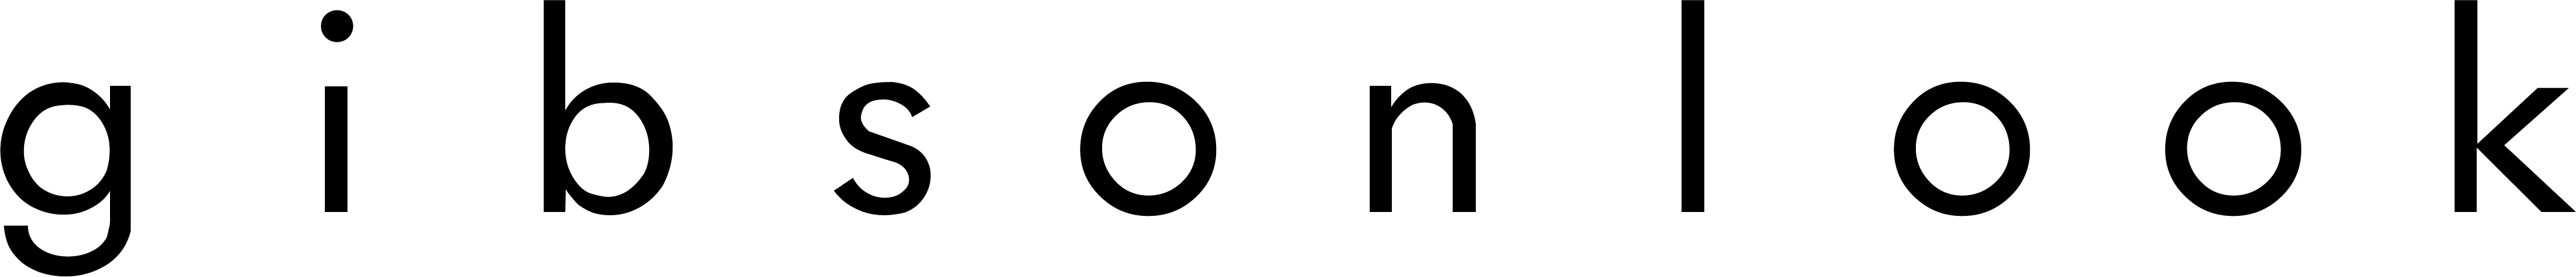 Gibsonlook_logo